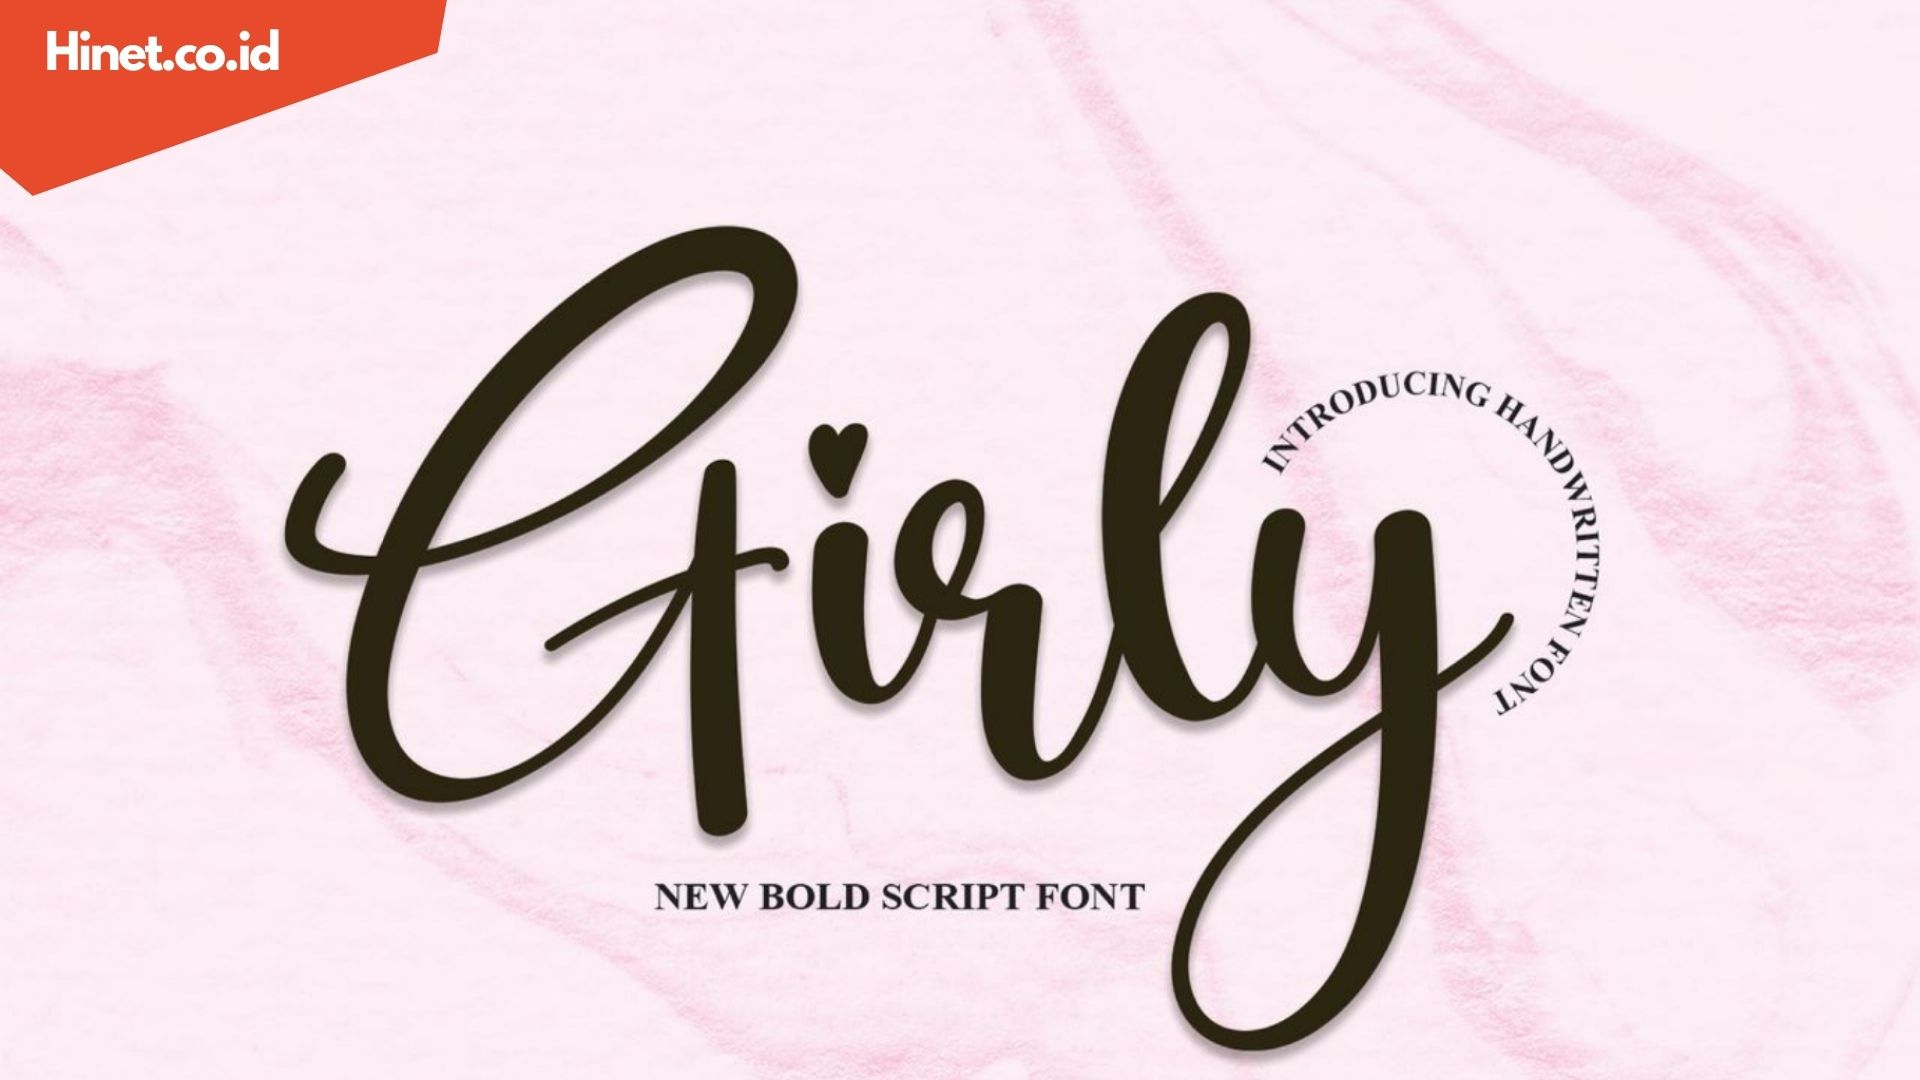 Cara Menggunakan Girly Font